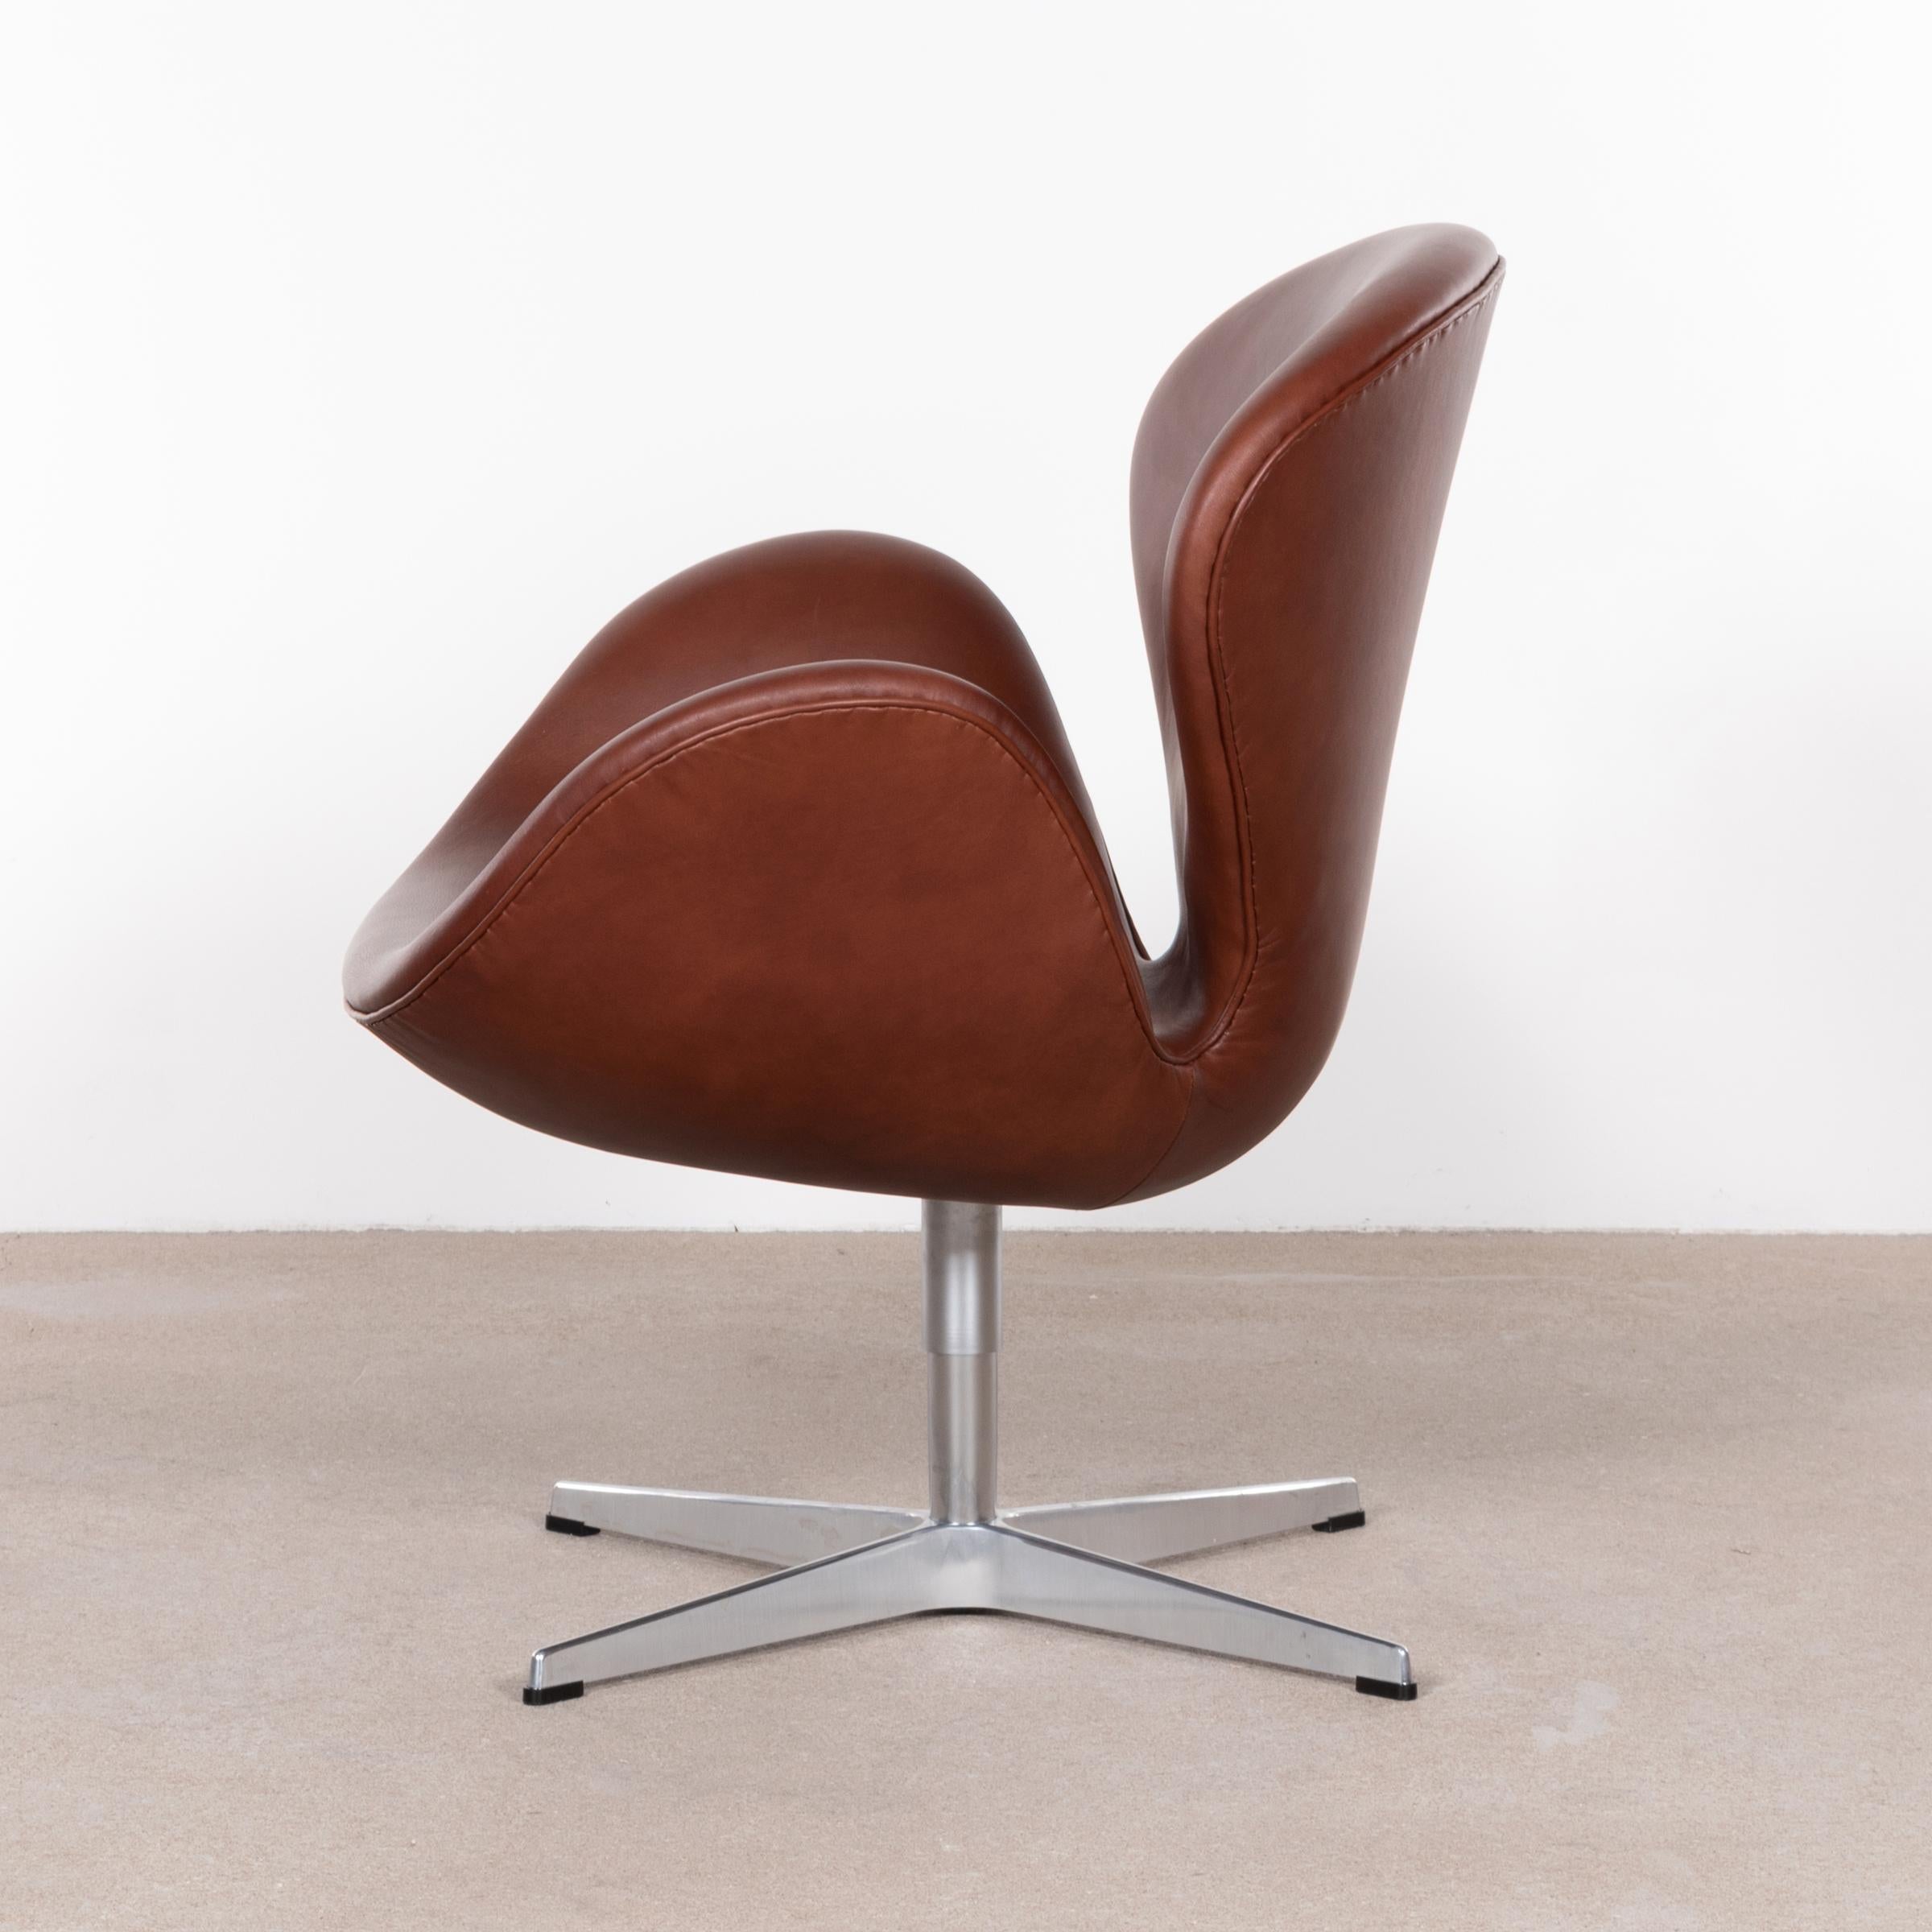 Arne Jacobsen Swan Chair 'Model 3320' in Brown Leather for Fritz Hansen Denmark 1